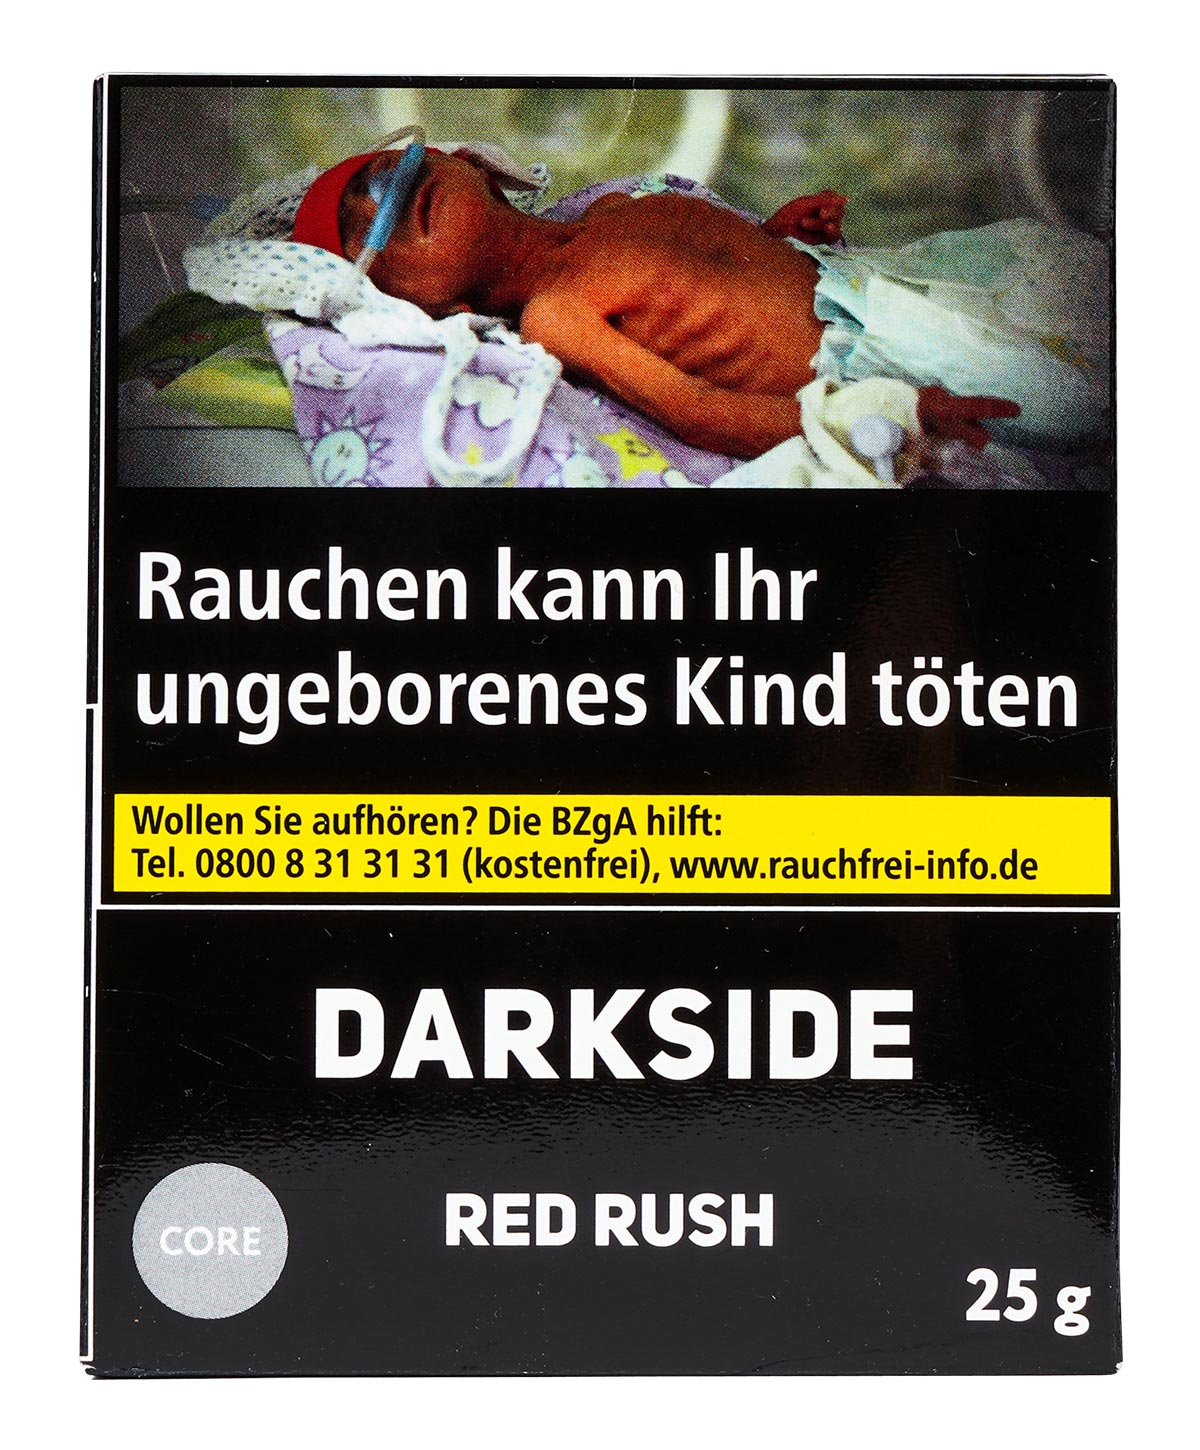 Darkside Core - Red Rush 25g